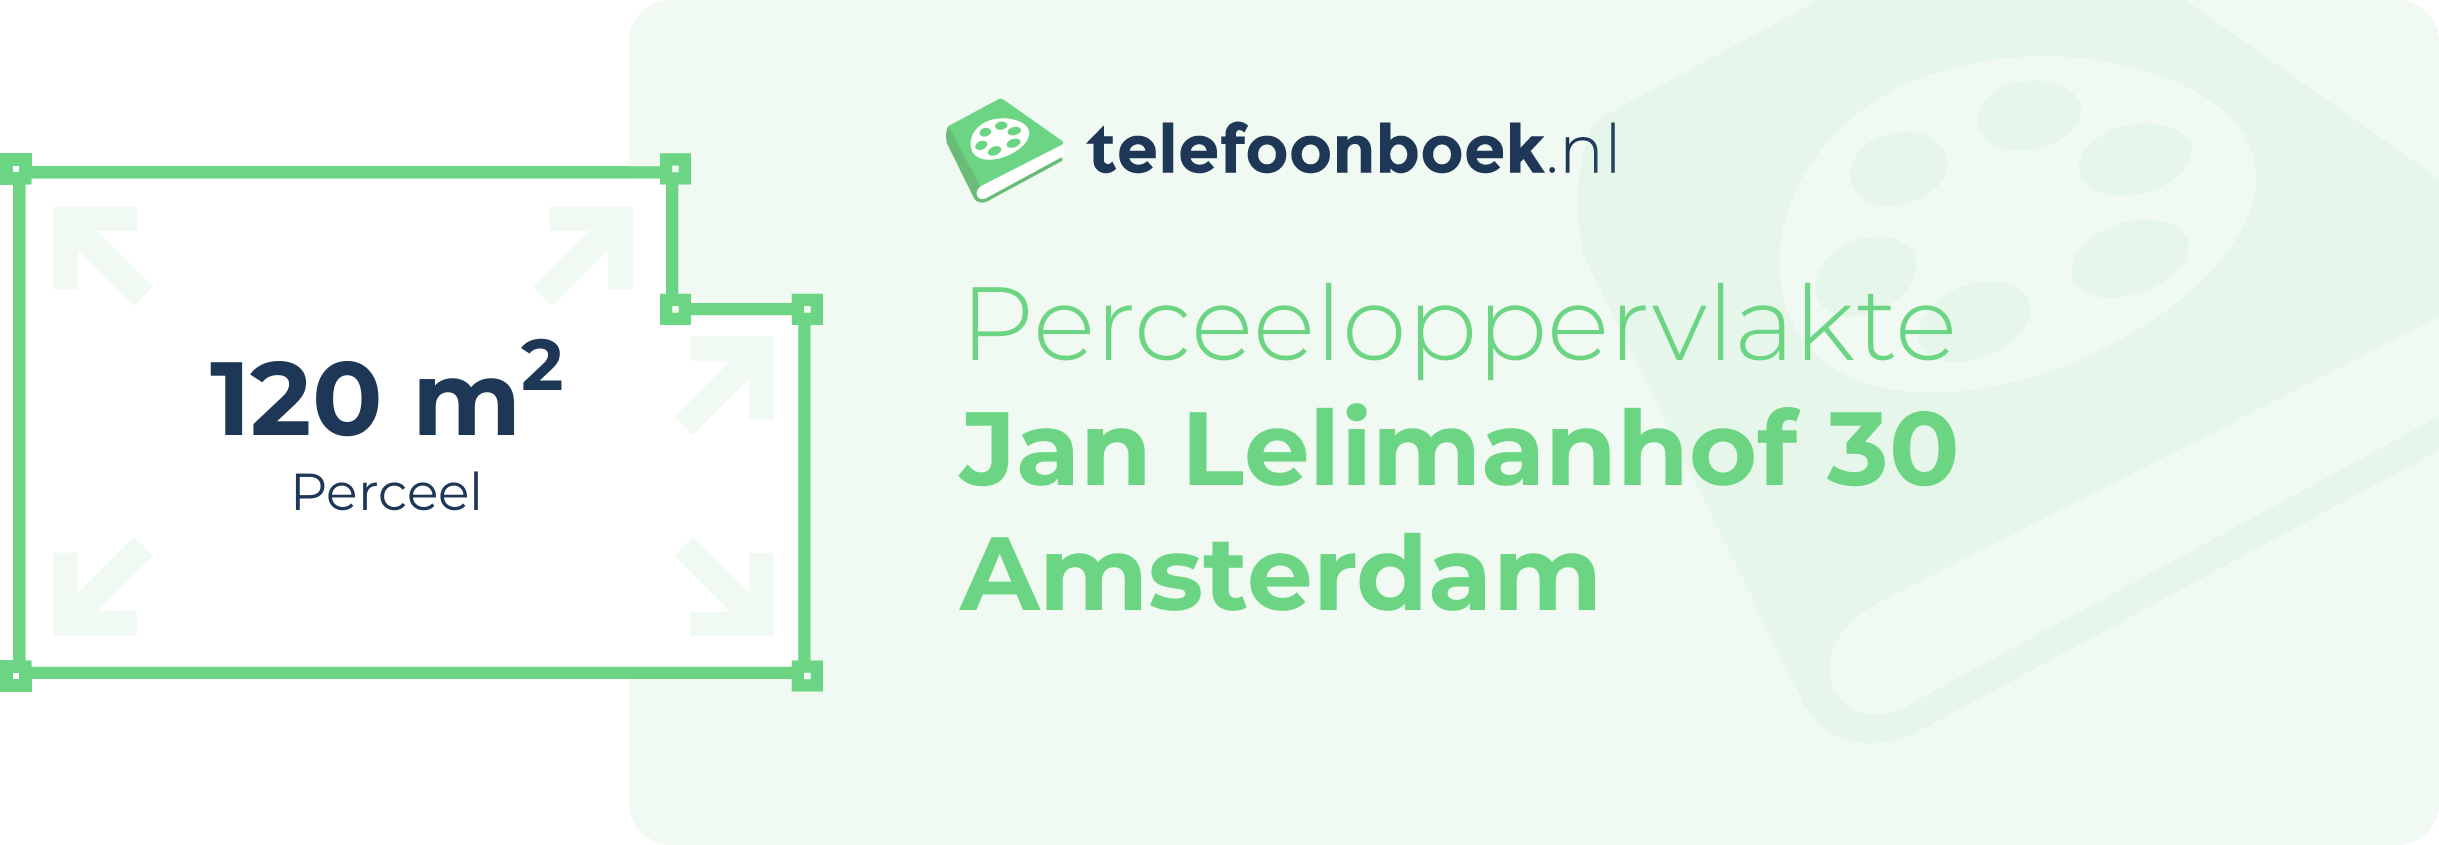 Perceeloppervlakte Jan Lelimanhof 30 Amsterdam